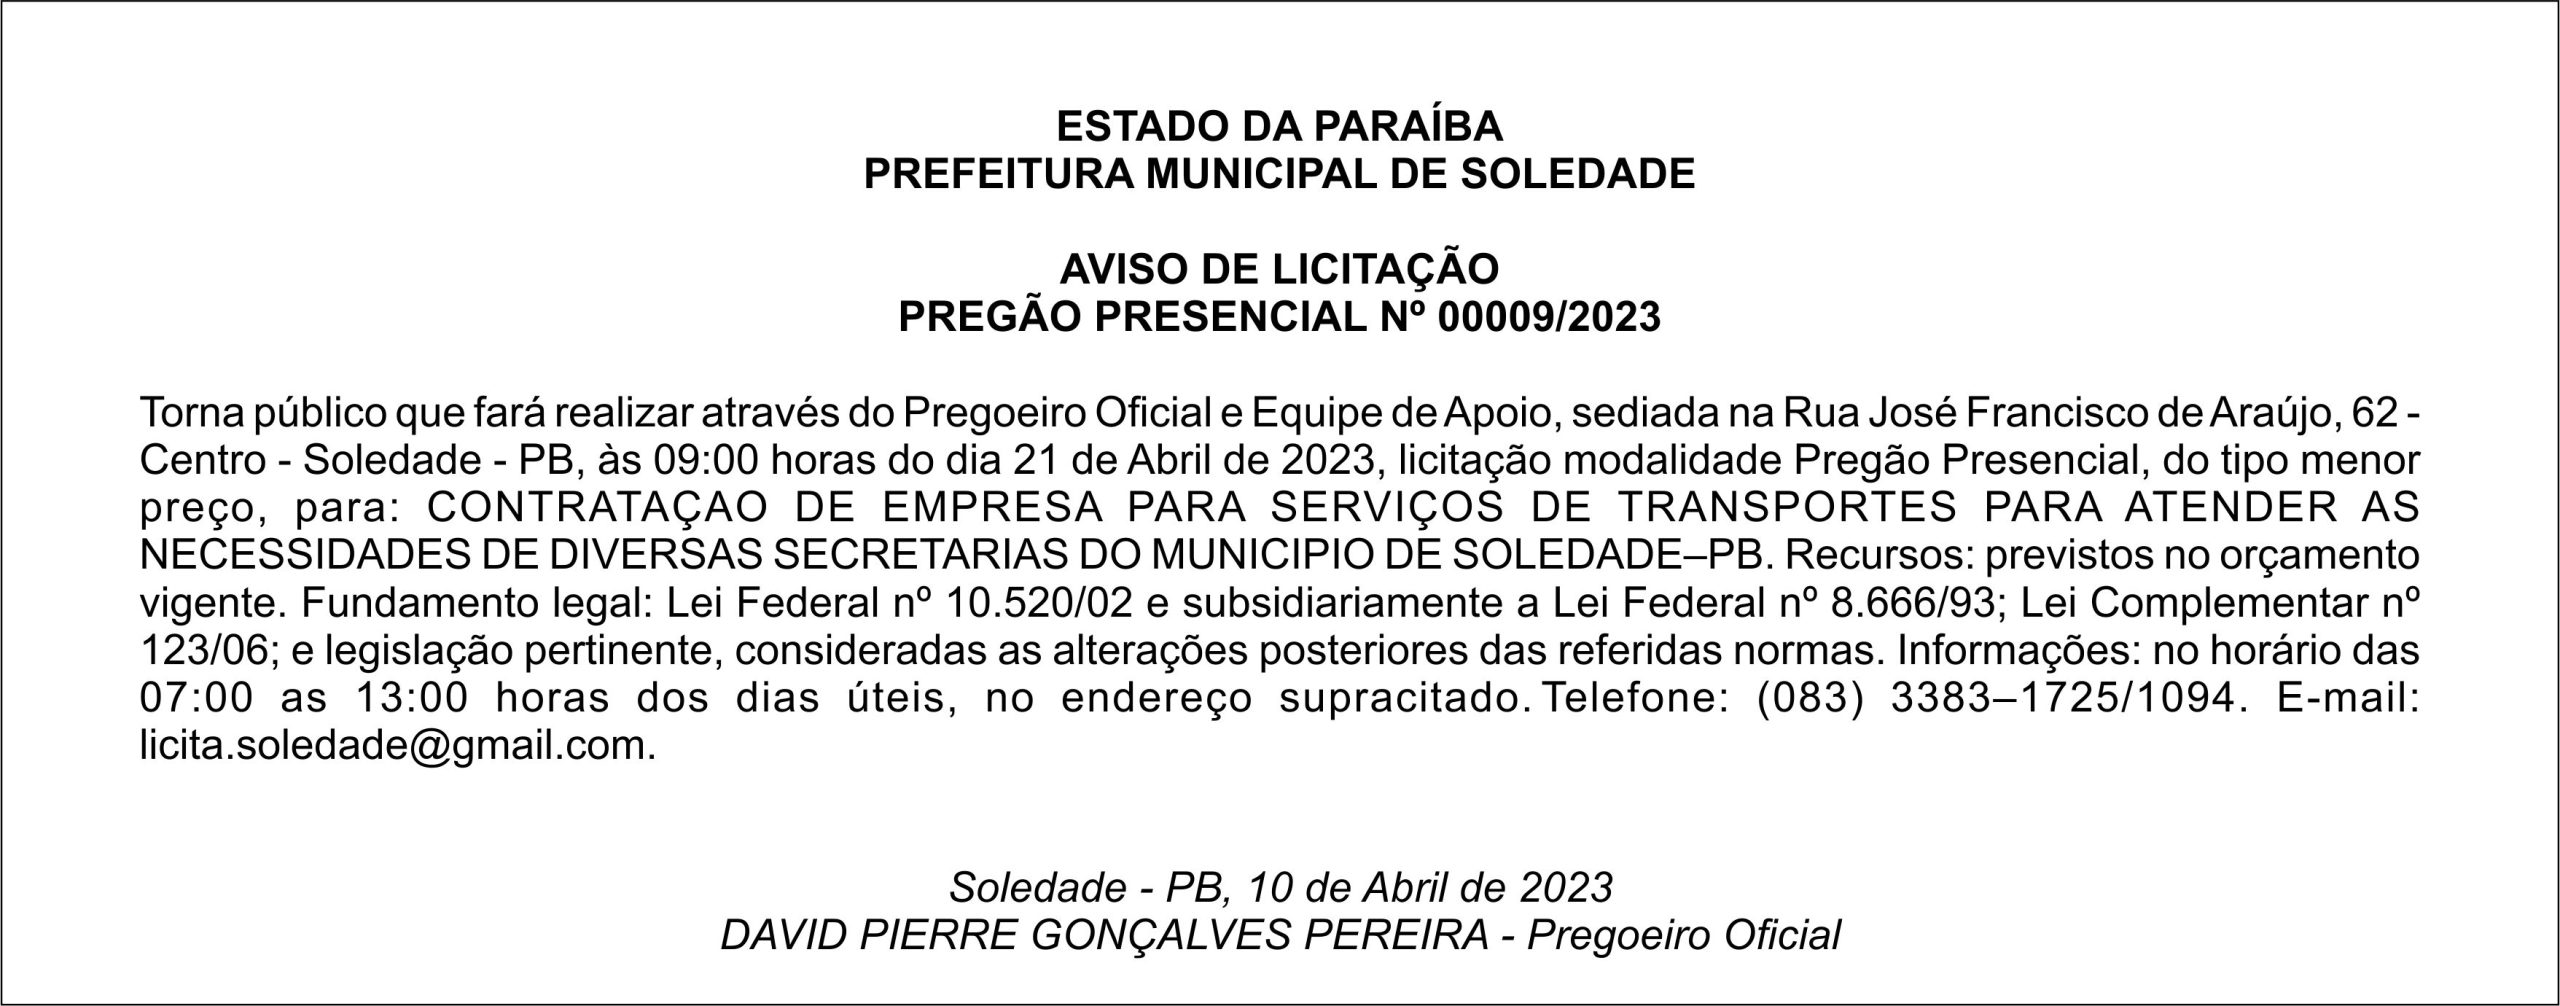 PREFEITURA MUNICIPAL DE SOLEDADE – AVISO DE LICITAÇÃO – PREGÃO PRESENCIAL Nº 00009/2023